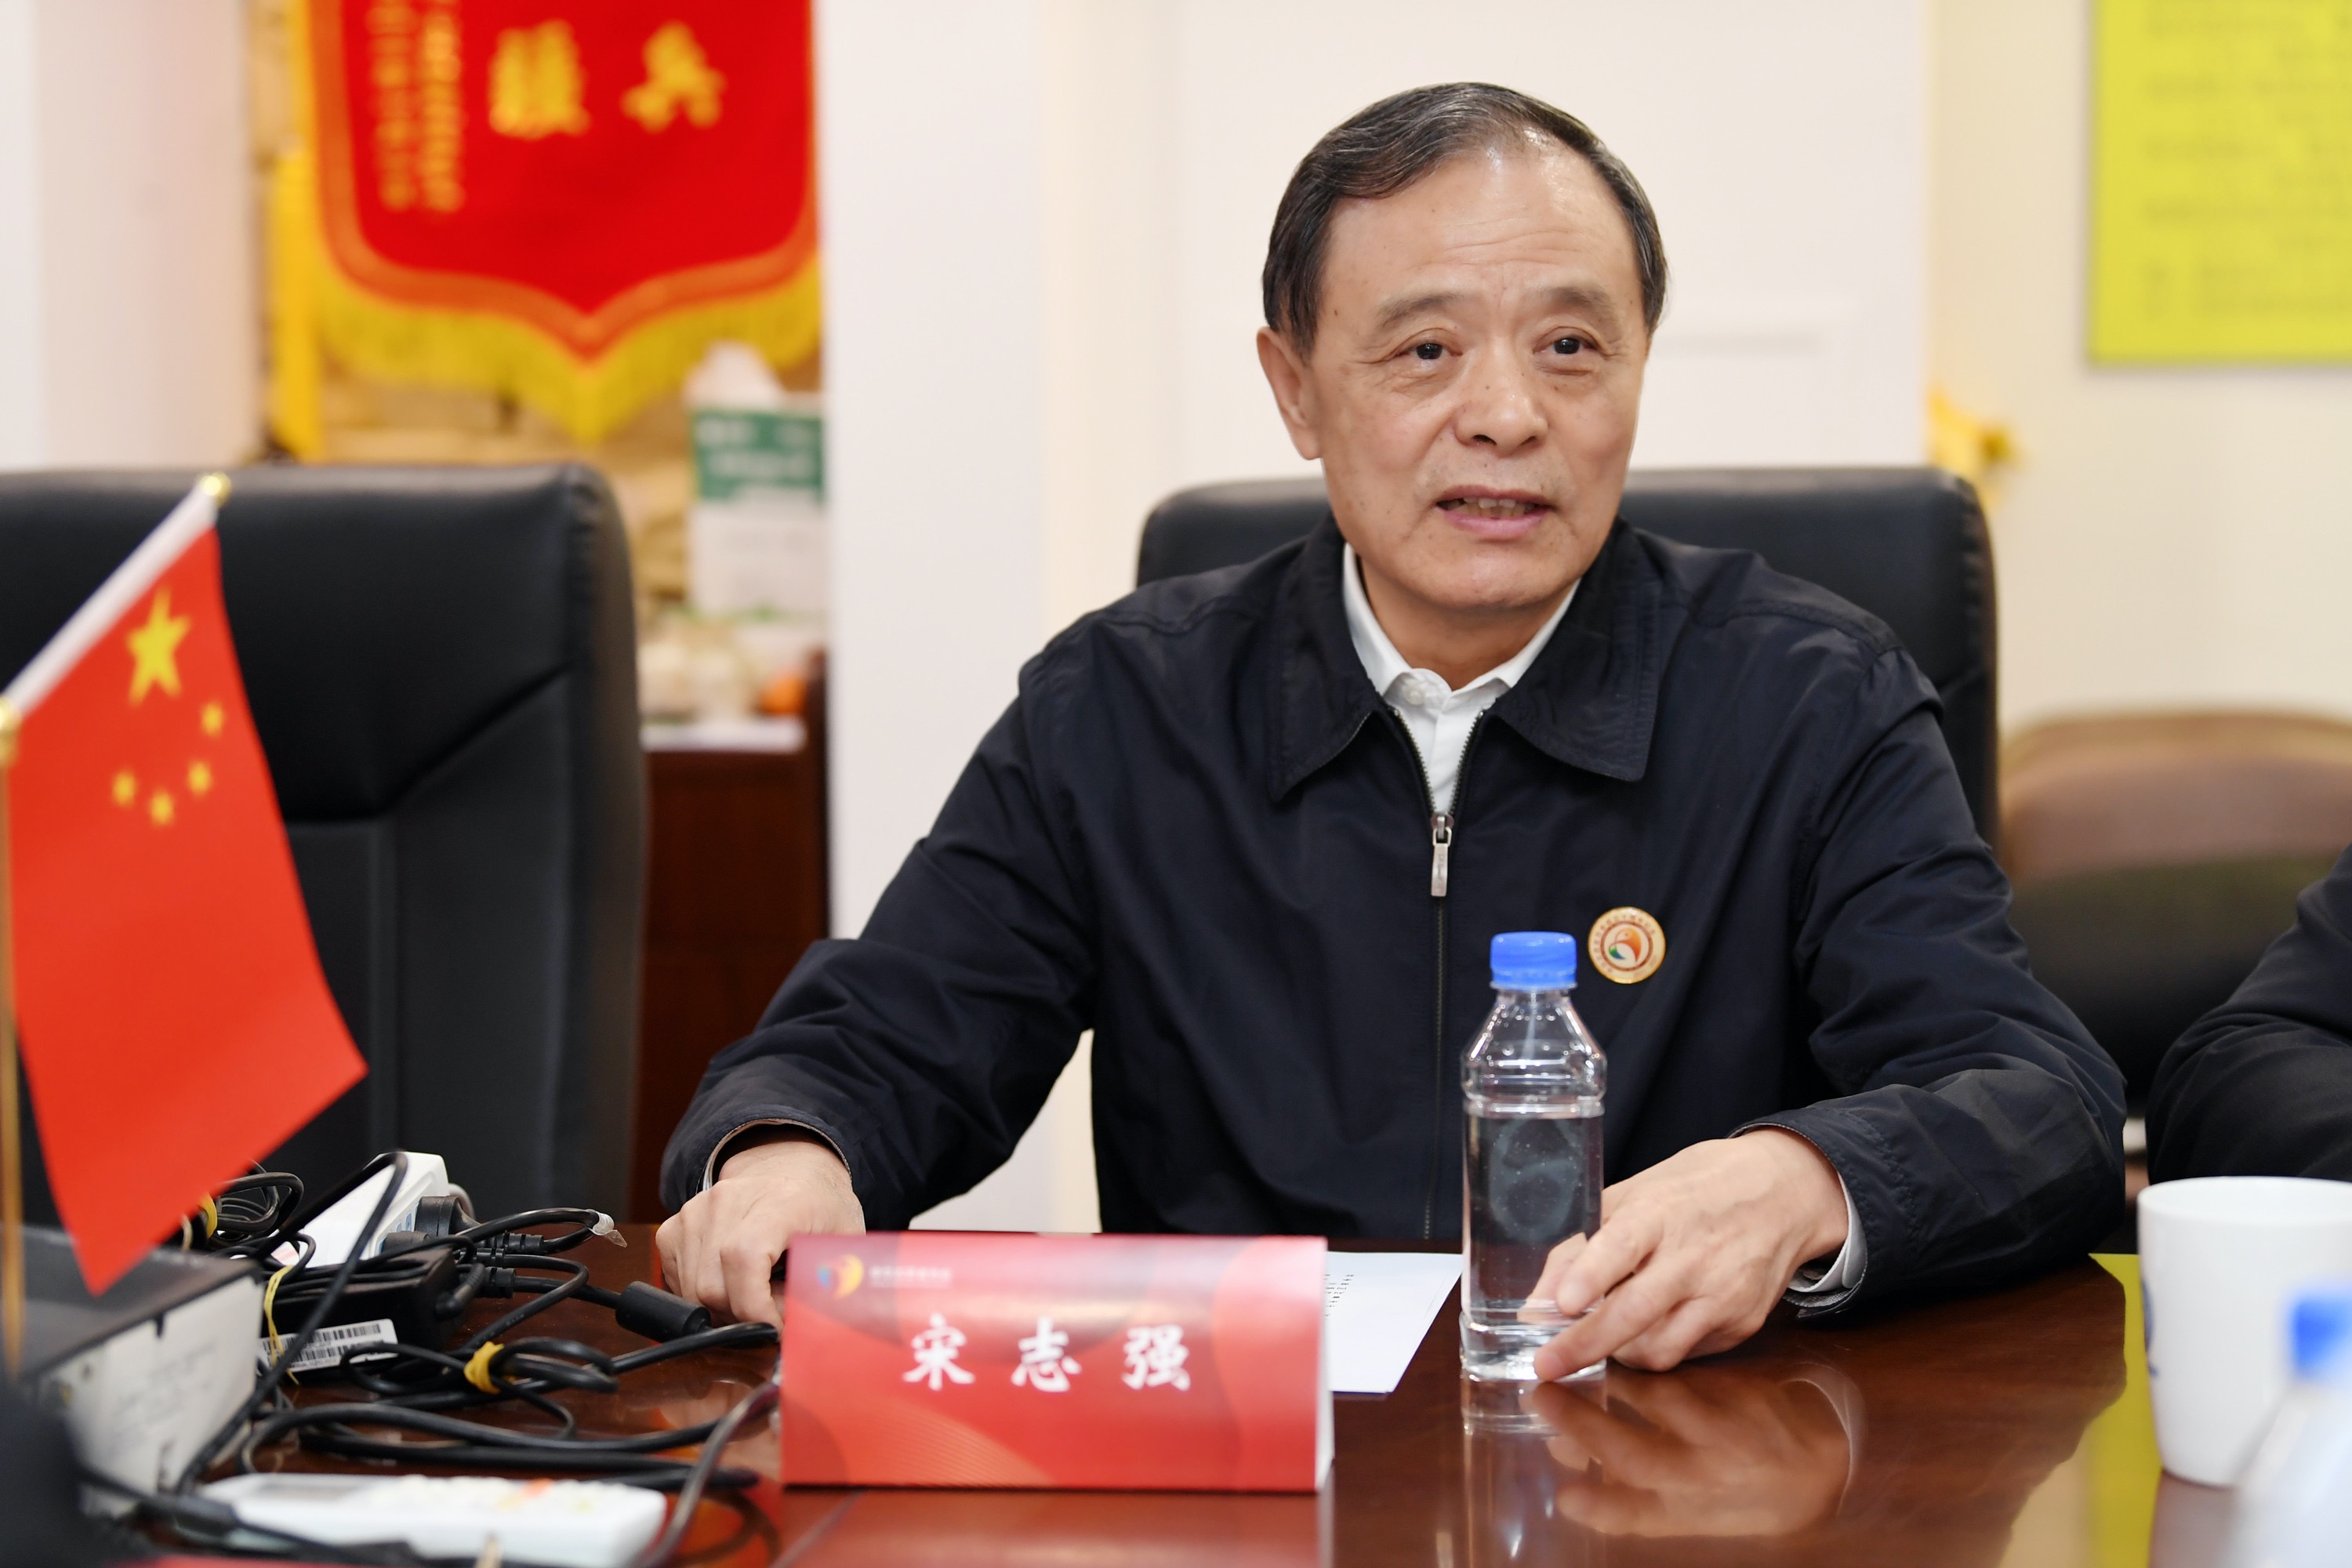 2022年1月17日16时,中华志愿者协会会长宋志强宣布:中华志愿者协会